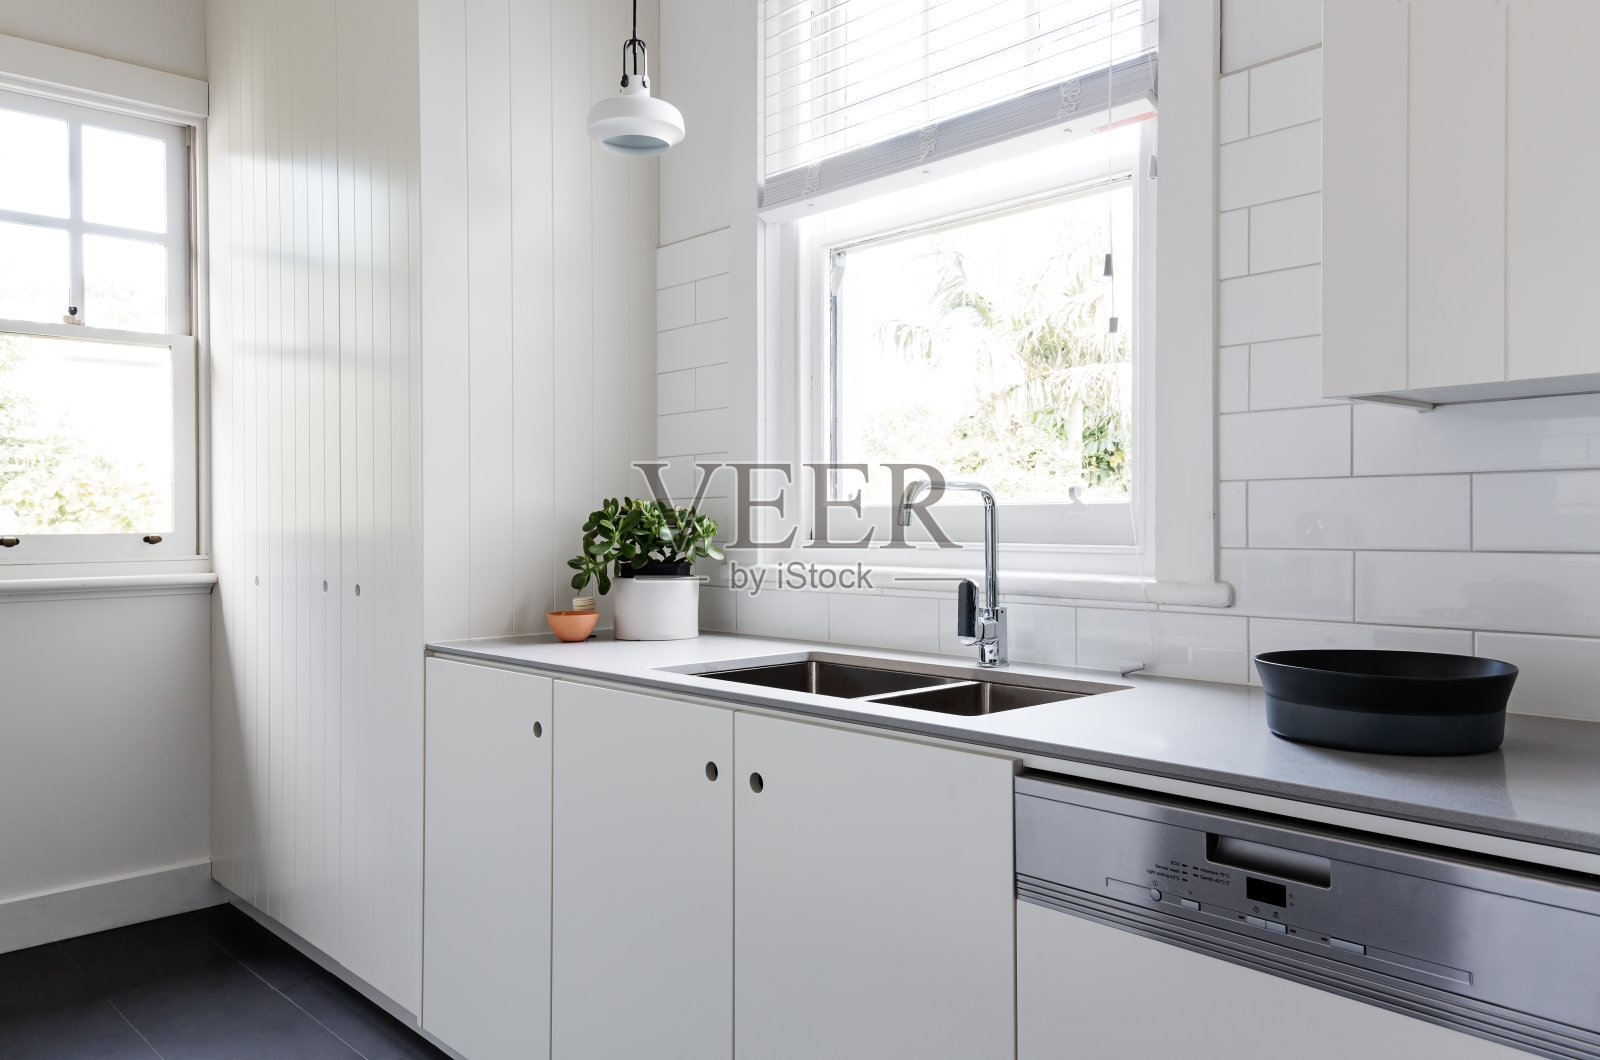 白色和木炭新装修厨房风格的澳大利亚厨房照片摄影图片